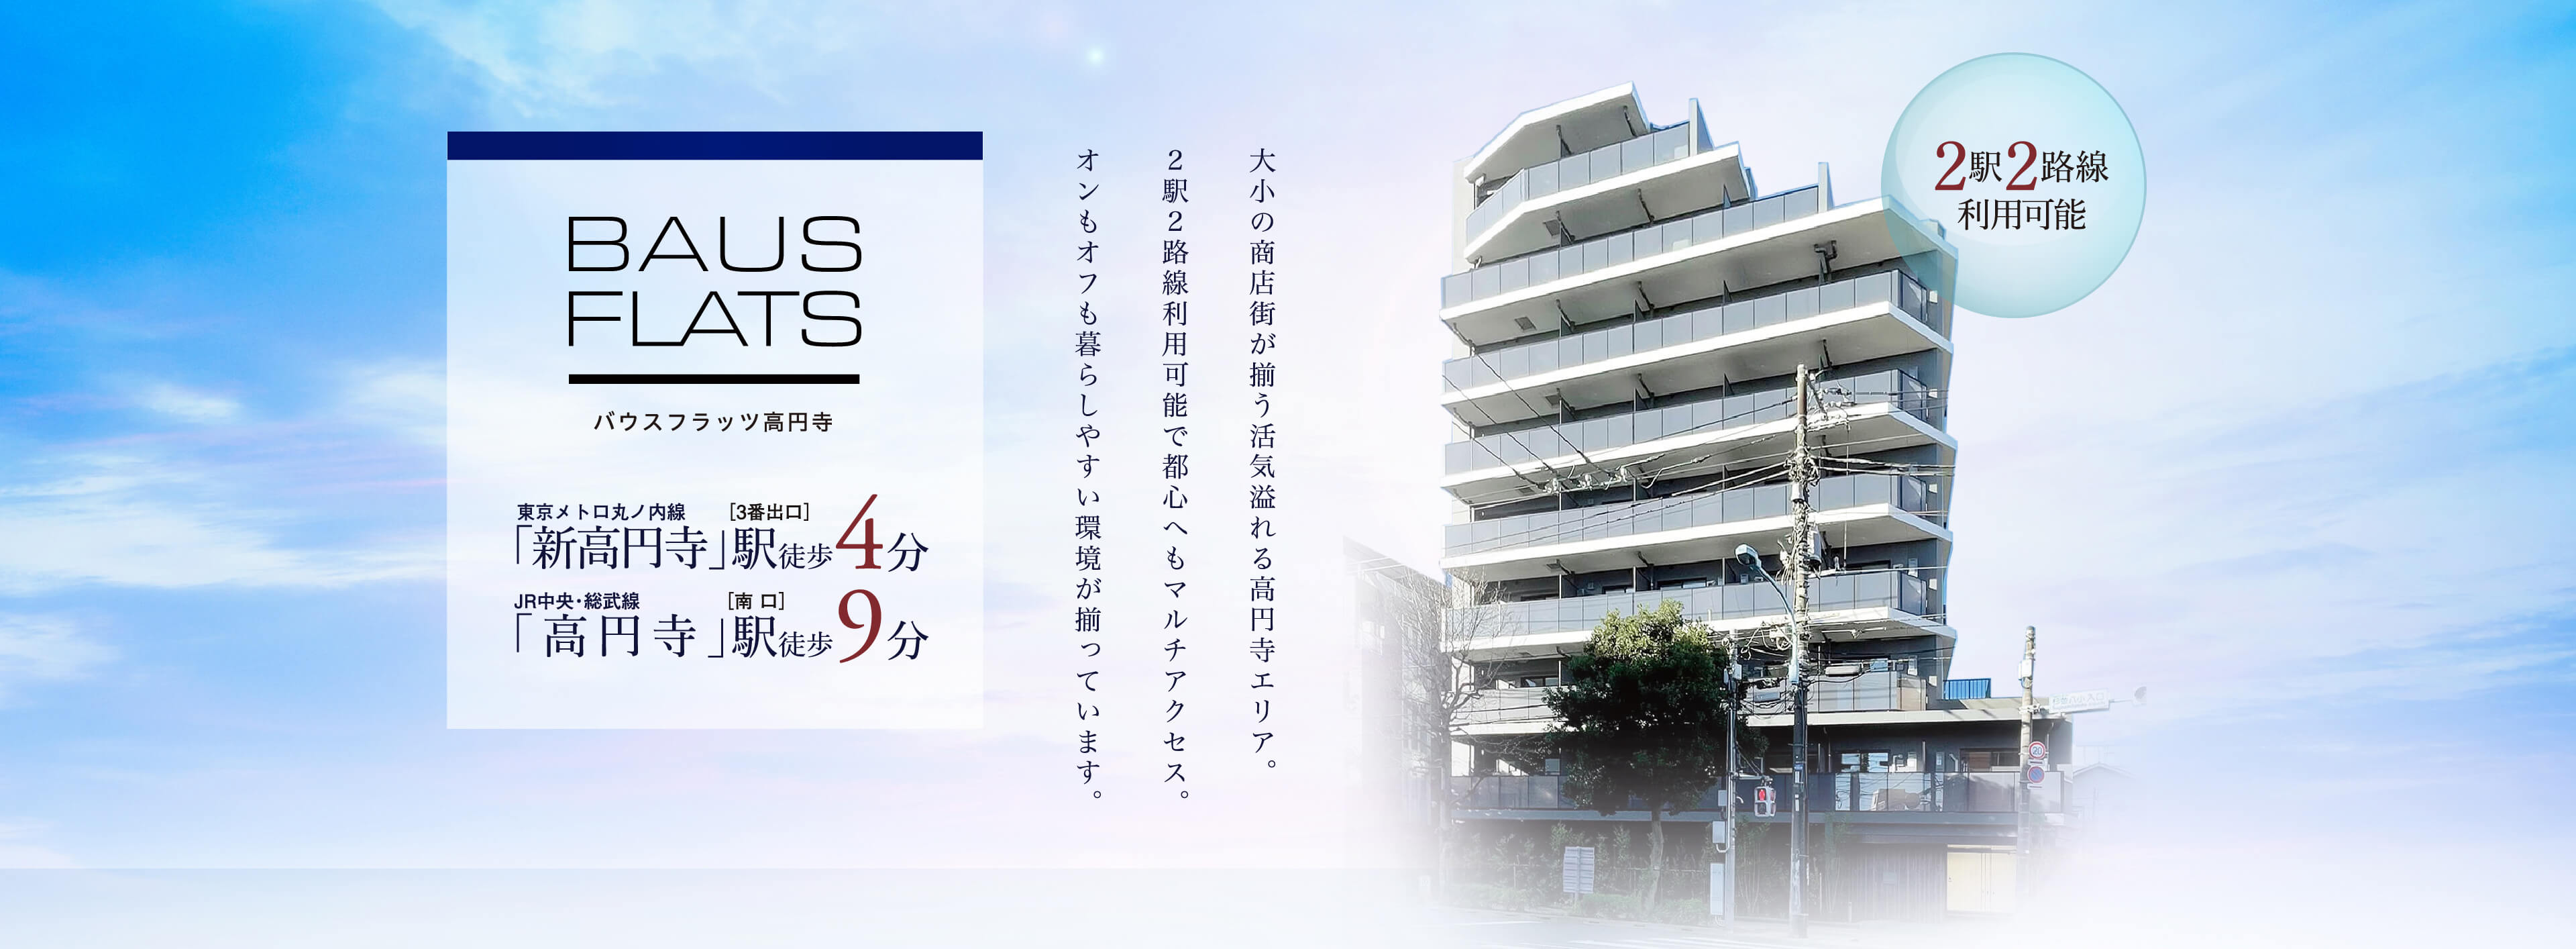 【公式】バウスフラッツ高円寺/東急住宅リースの賃貸マンション